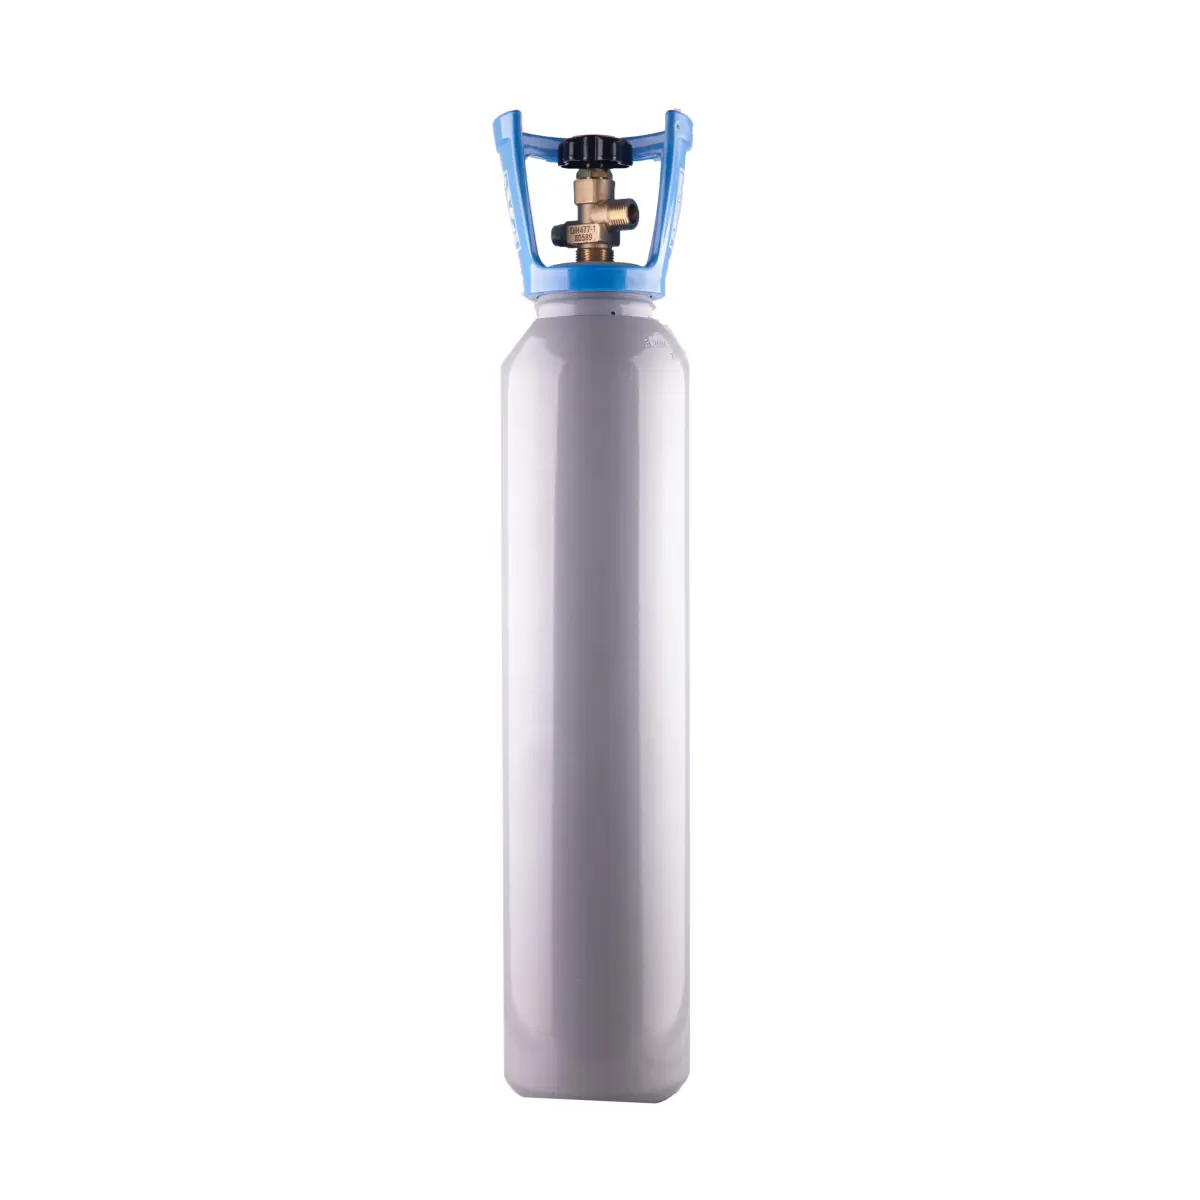 8 L Hochdruckstahl-CO2-Gazzylinder für industriellen Gasgebrauch oder für Aquatisches Leben in Aquarien